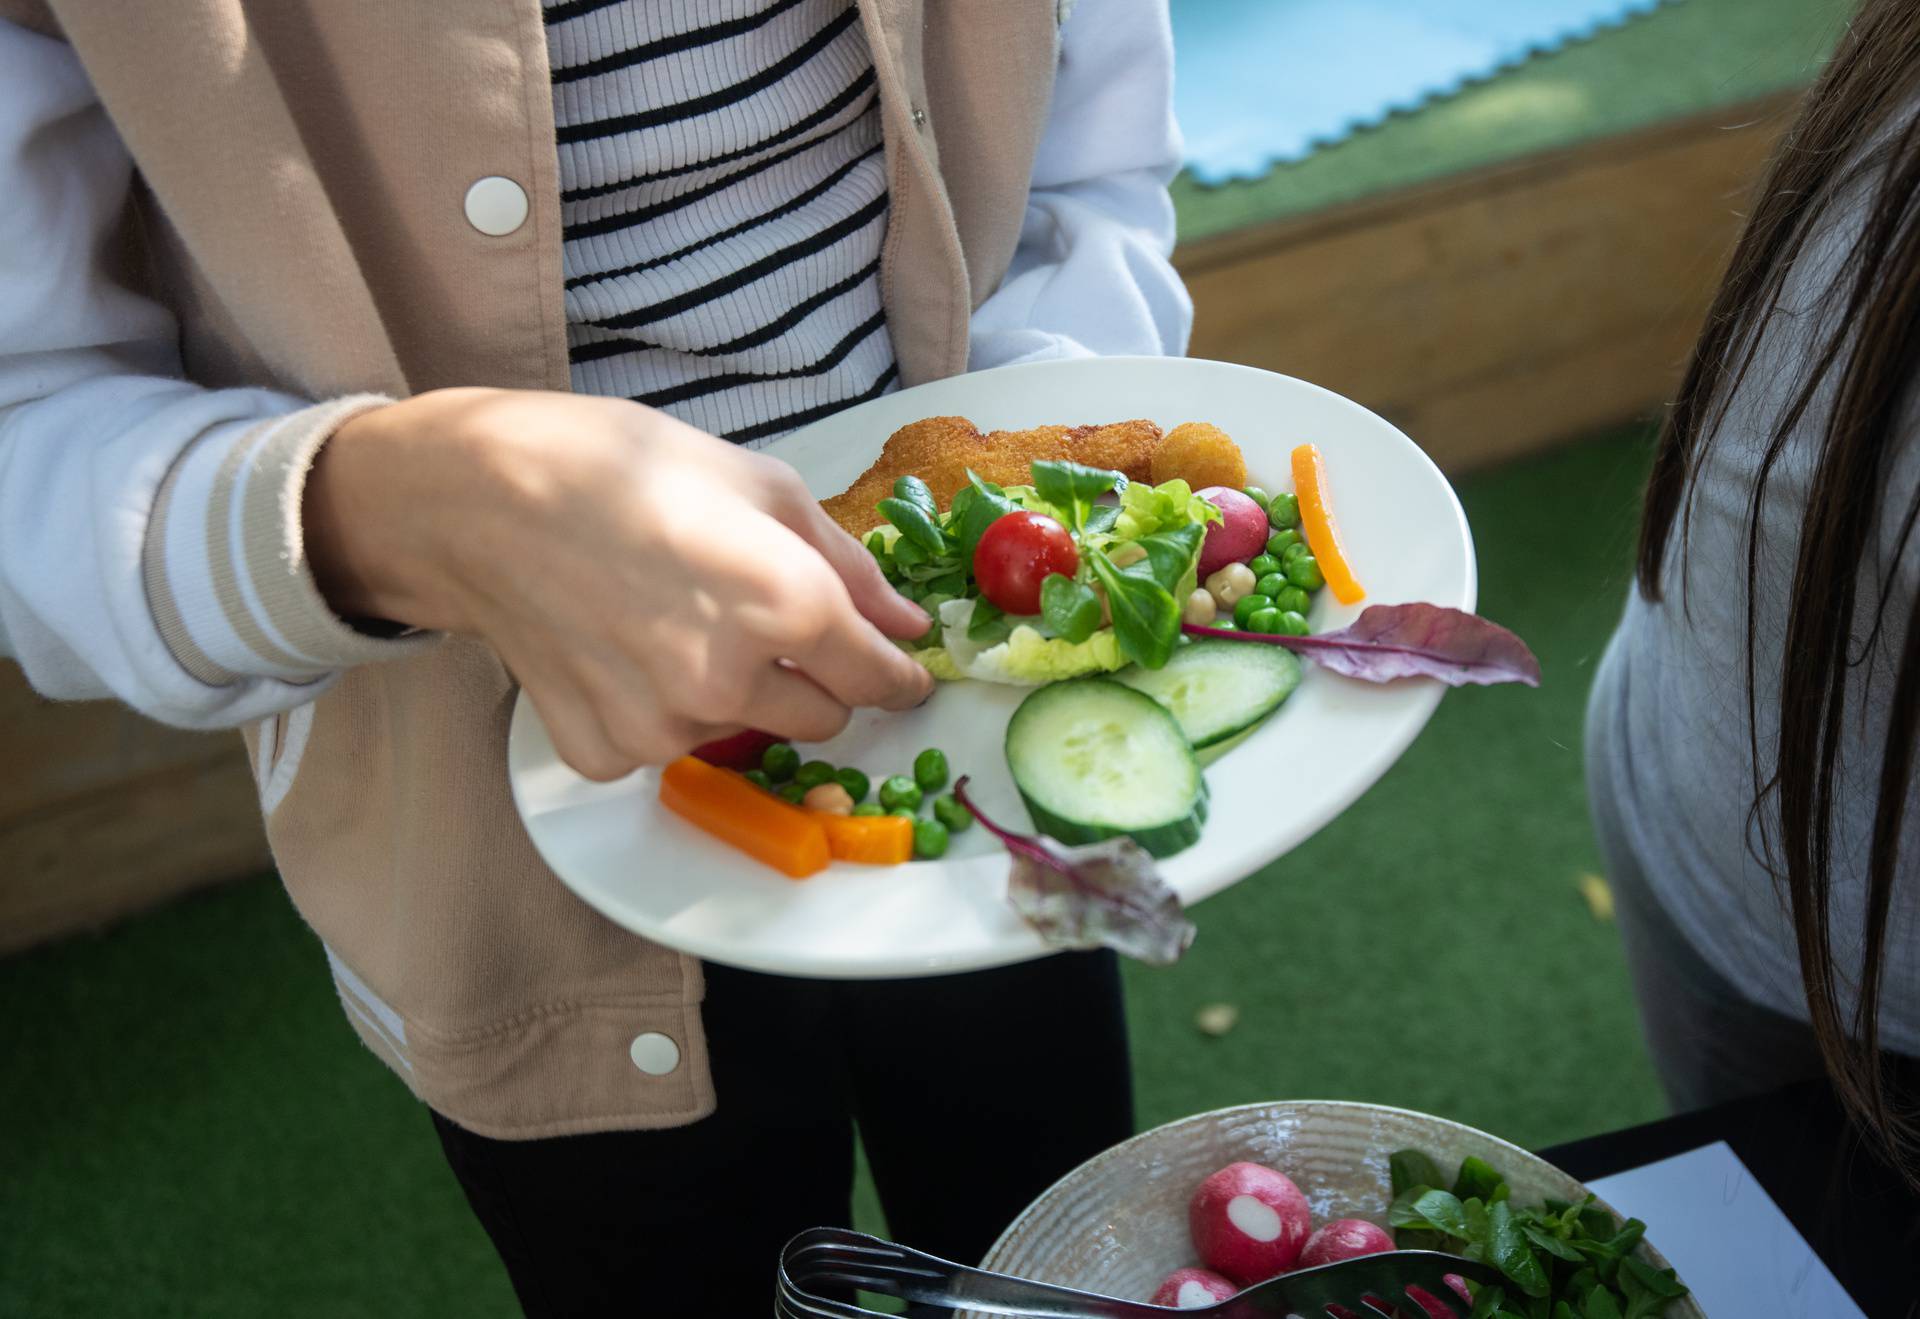 Inspiracija za ručak: Omiljeno jelo svakog školarca dobilo je svoju zdraviju varijantu!